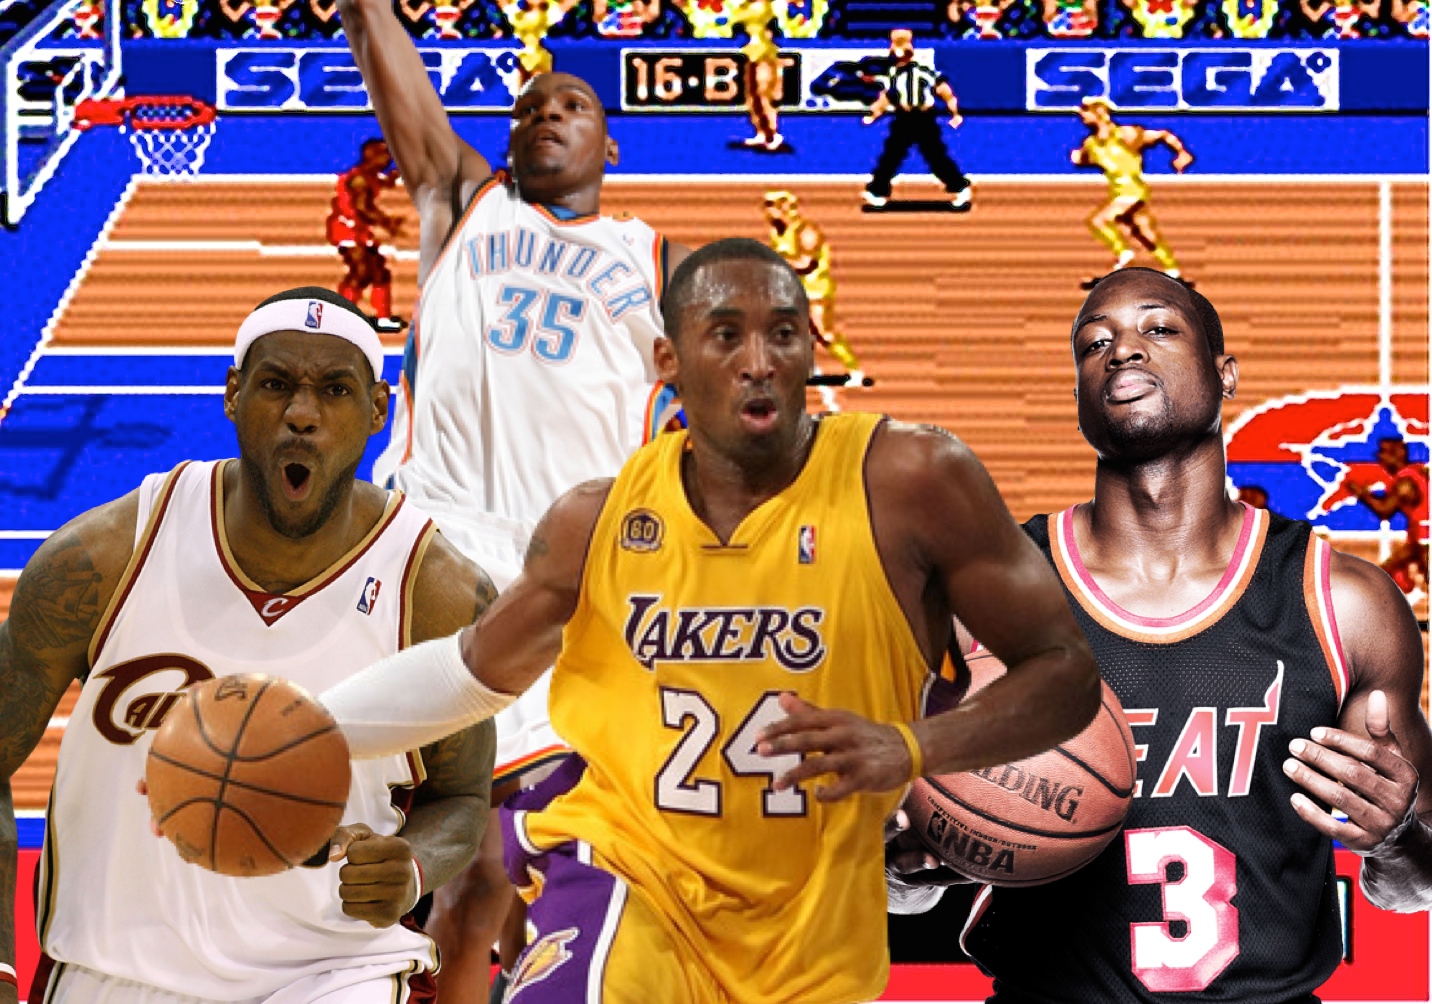 NBA Stars